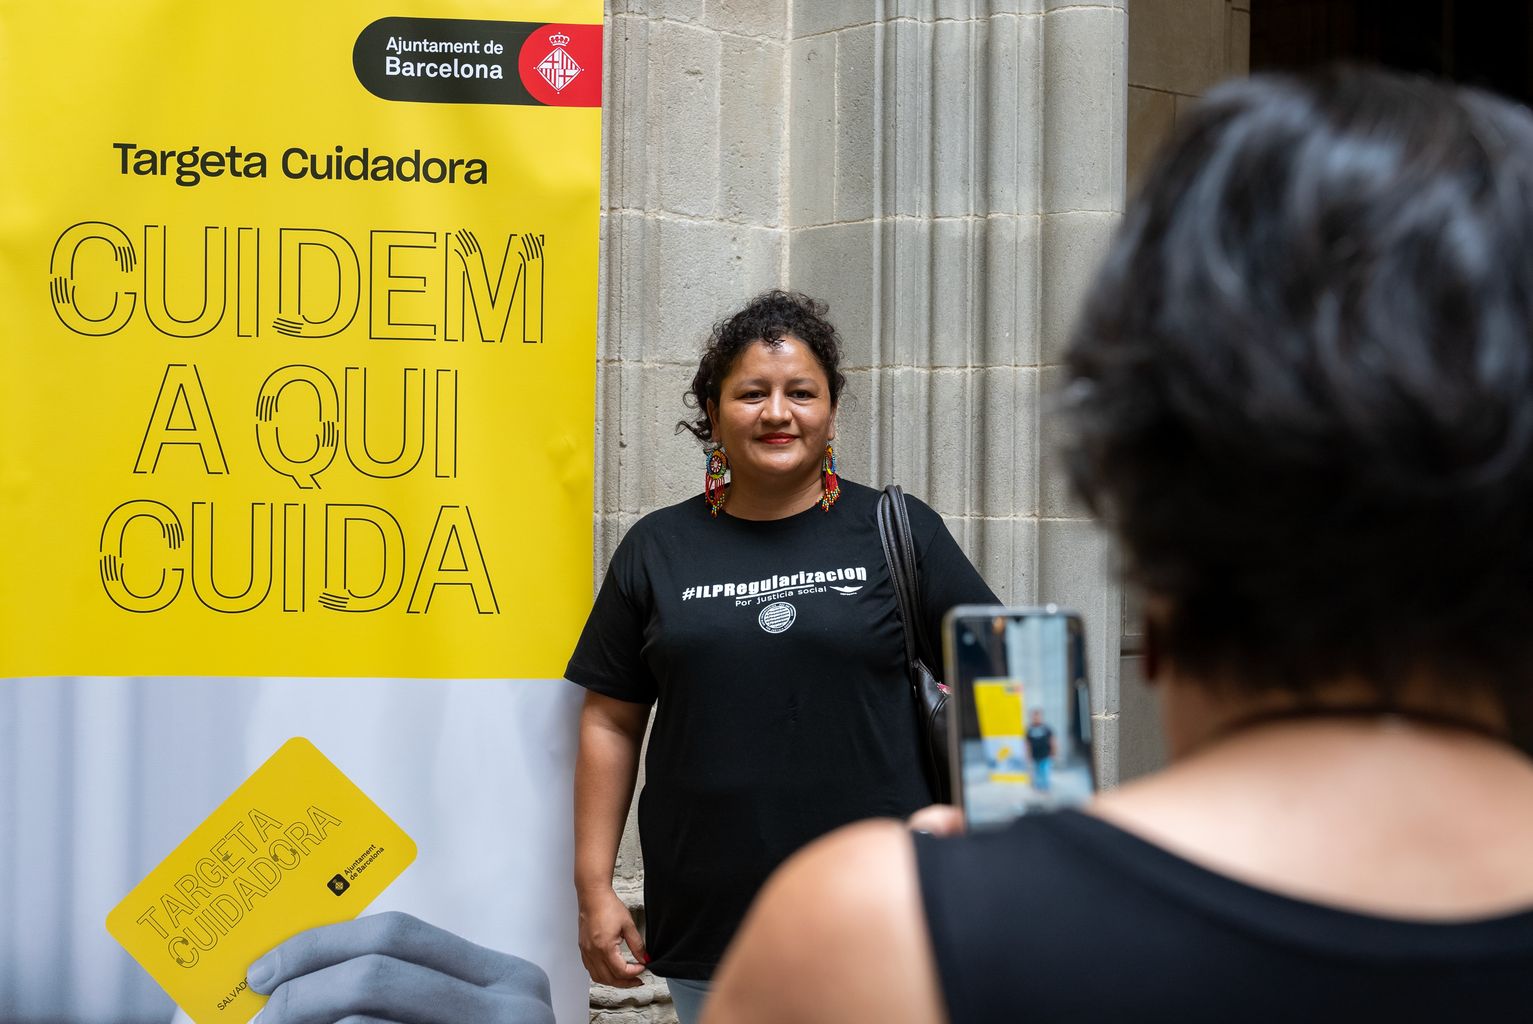 Una convidada al costat del cartell promocional de la nova Targeta Cuidadora de Barcelona.